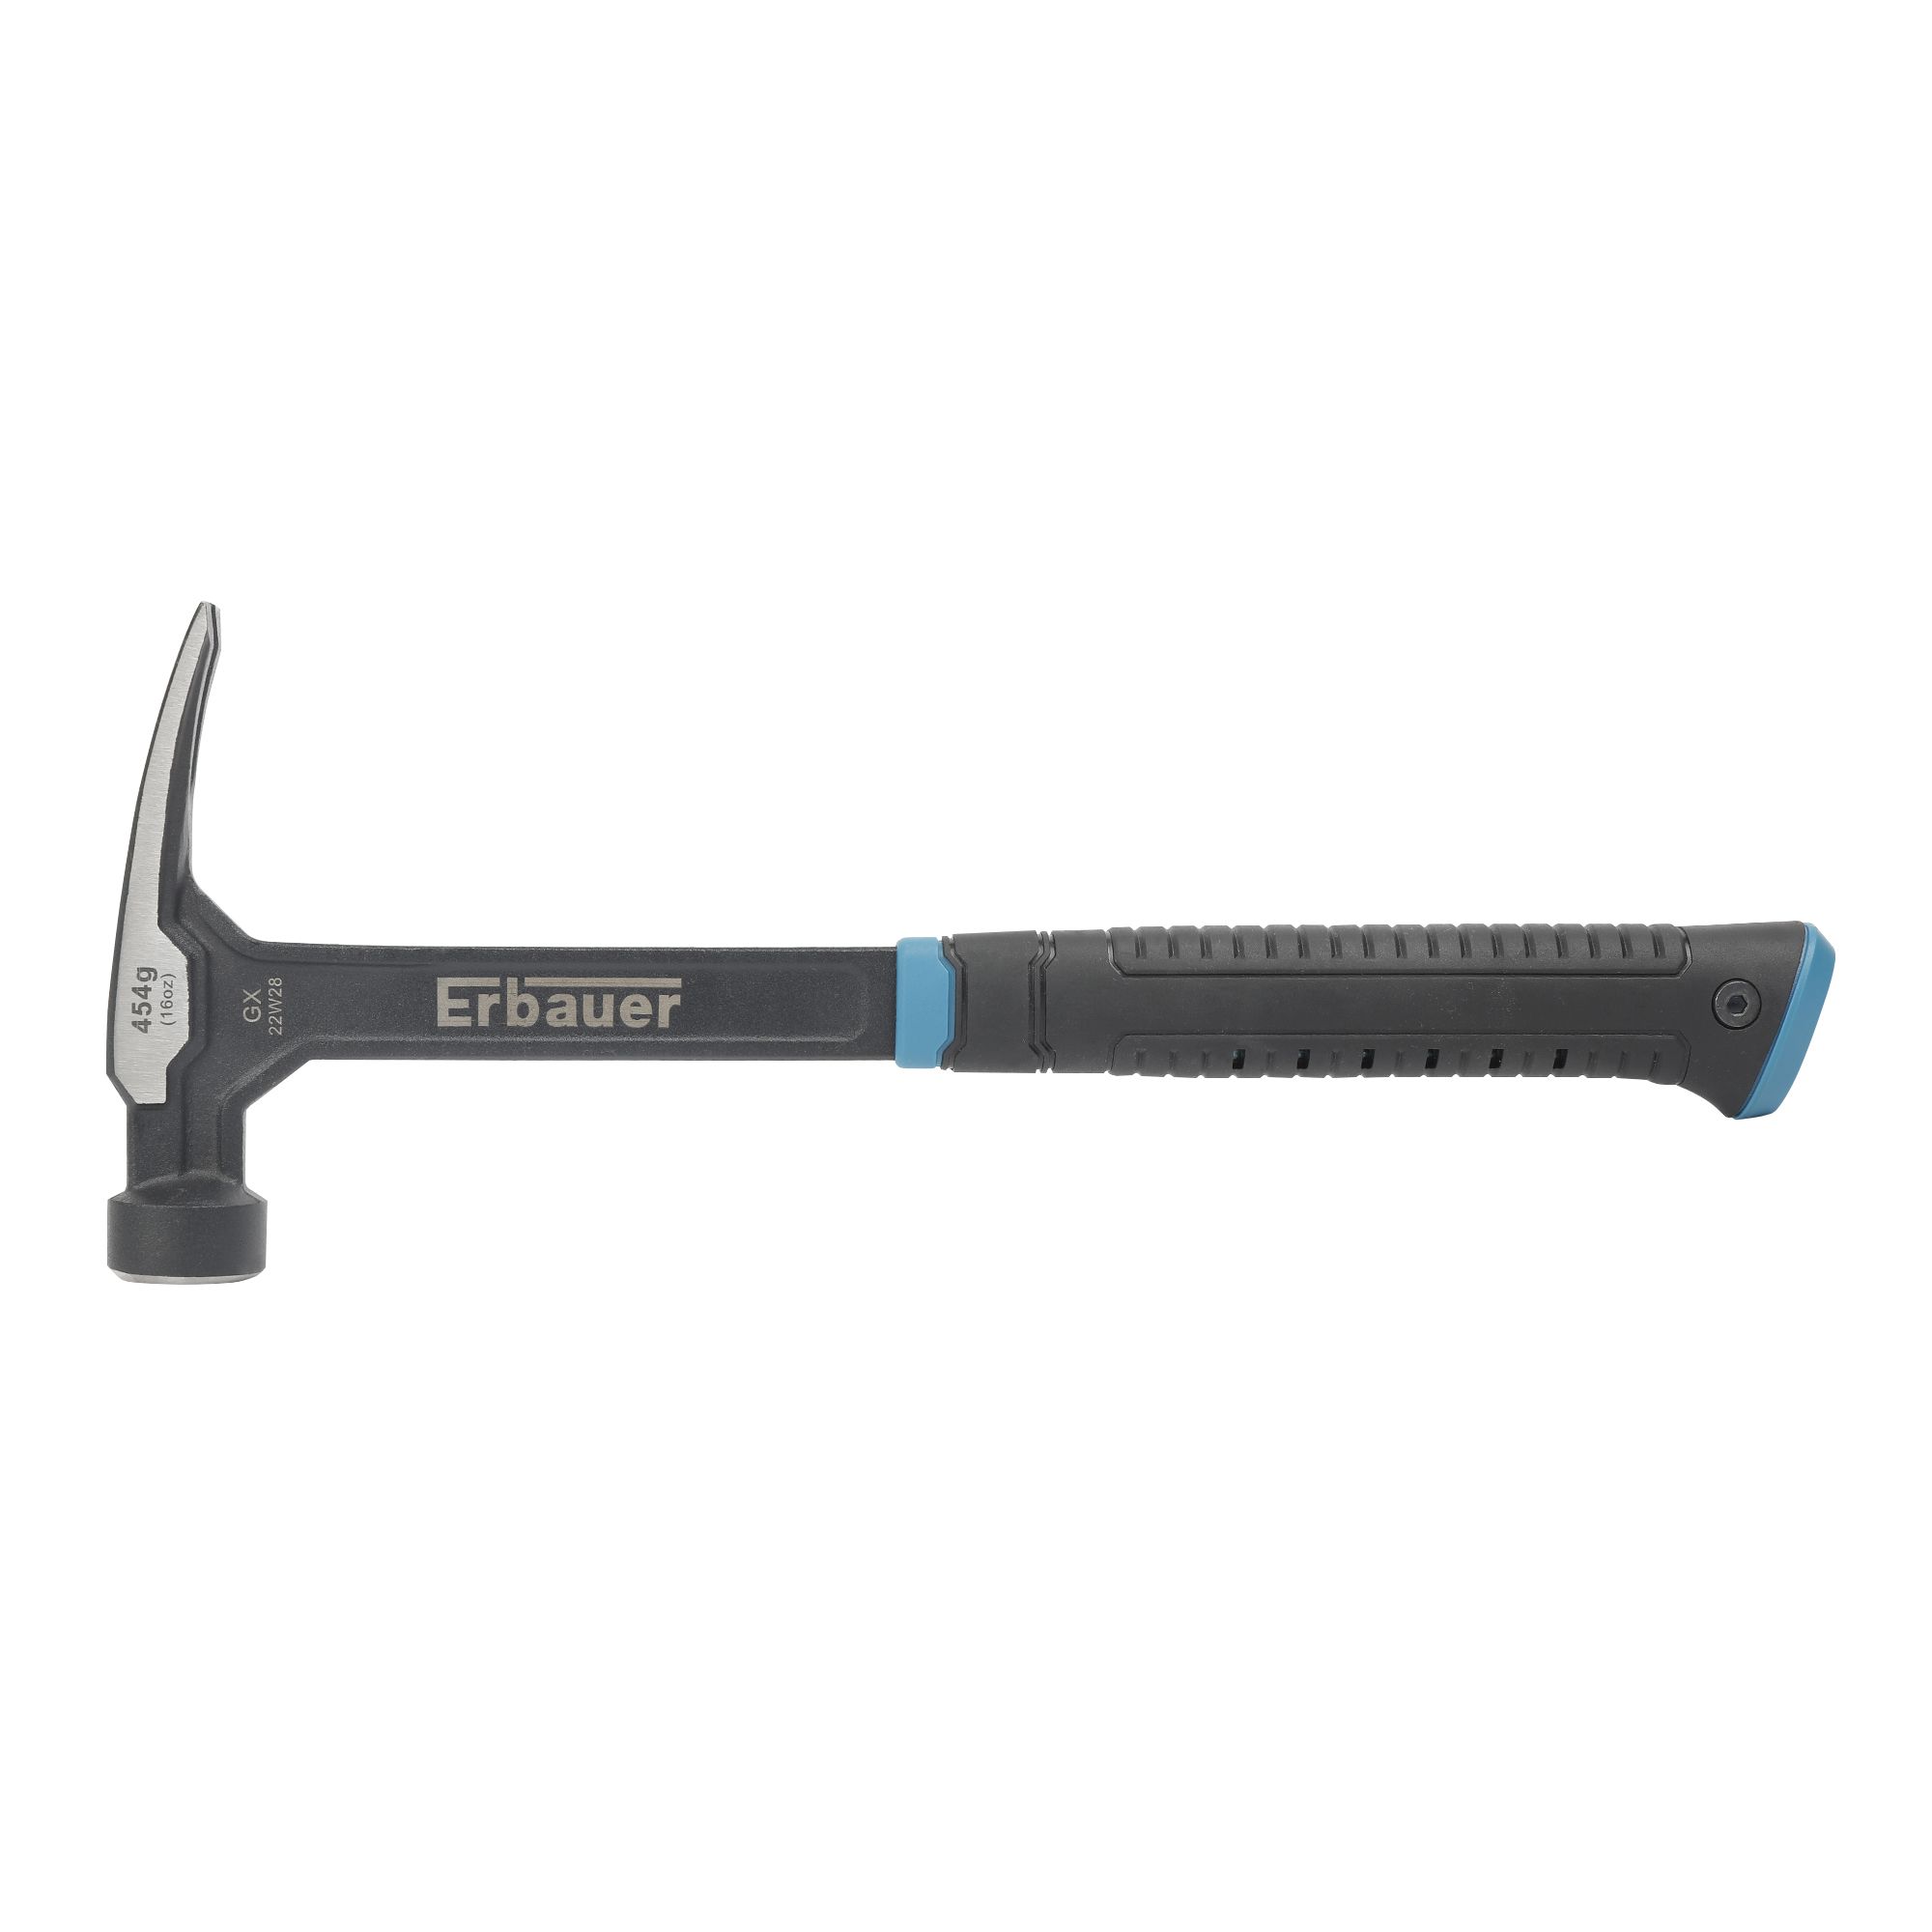 Erbauer Claw Hammer 16oz